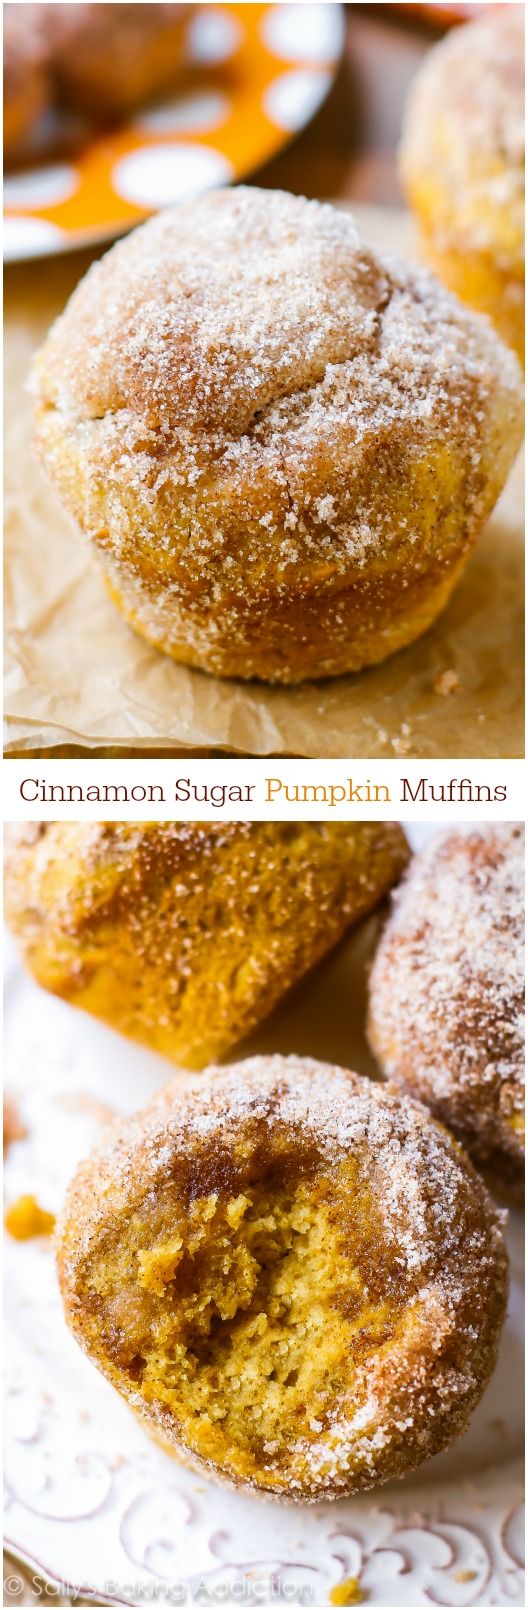 Muffins à la citrouille parfaits enrobés de sucre à la cannelle. Ils ont le goût de vos muffins préférés de citrouille de la boulangerie!